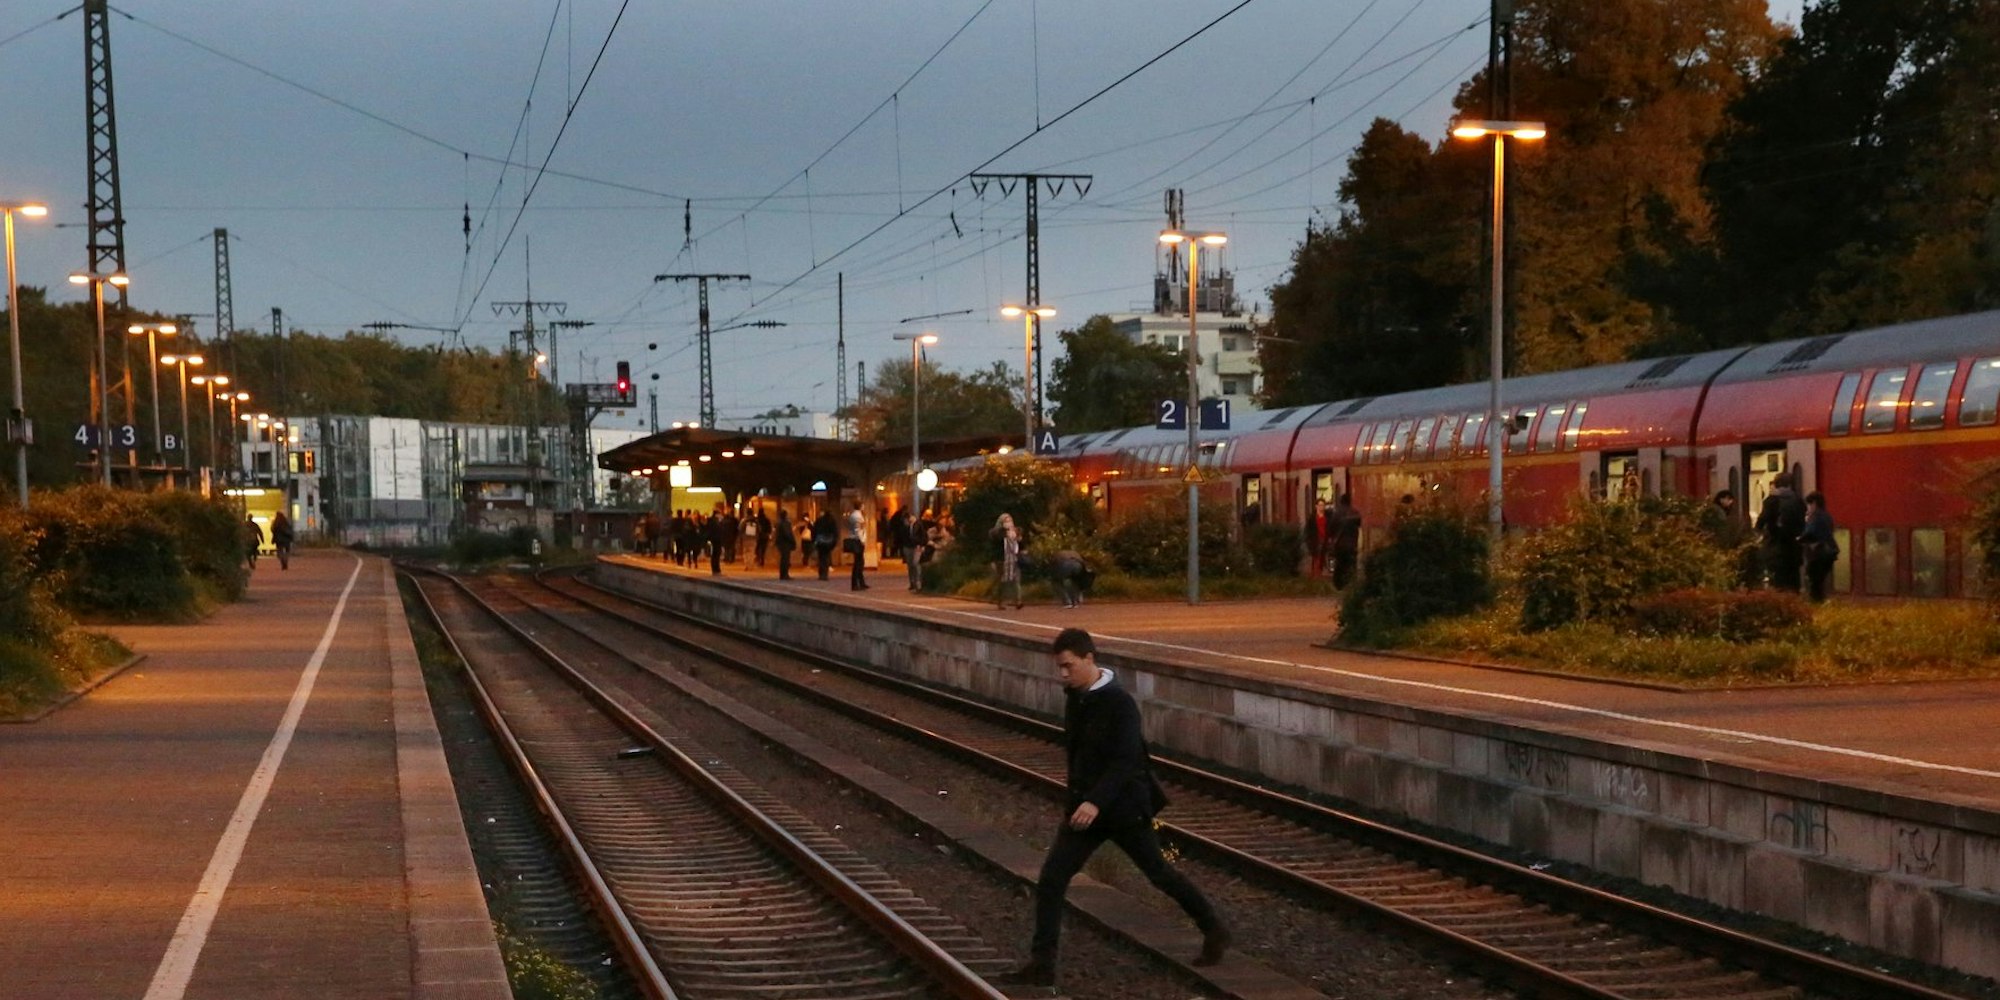 Seit vielen Jahren ein unhaltbarer Zustand: Pendler überqueren die Gleise am Bahnhof Süd, weil es zur Zülpicher Straße keinen Zugang zu Gleis 1 und 2 gibt.